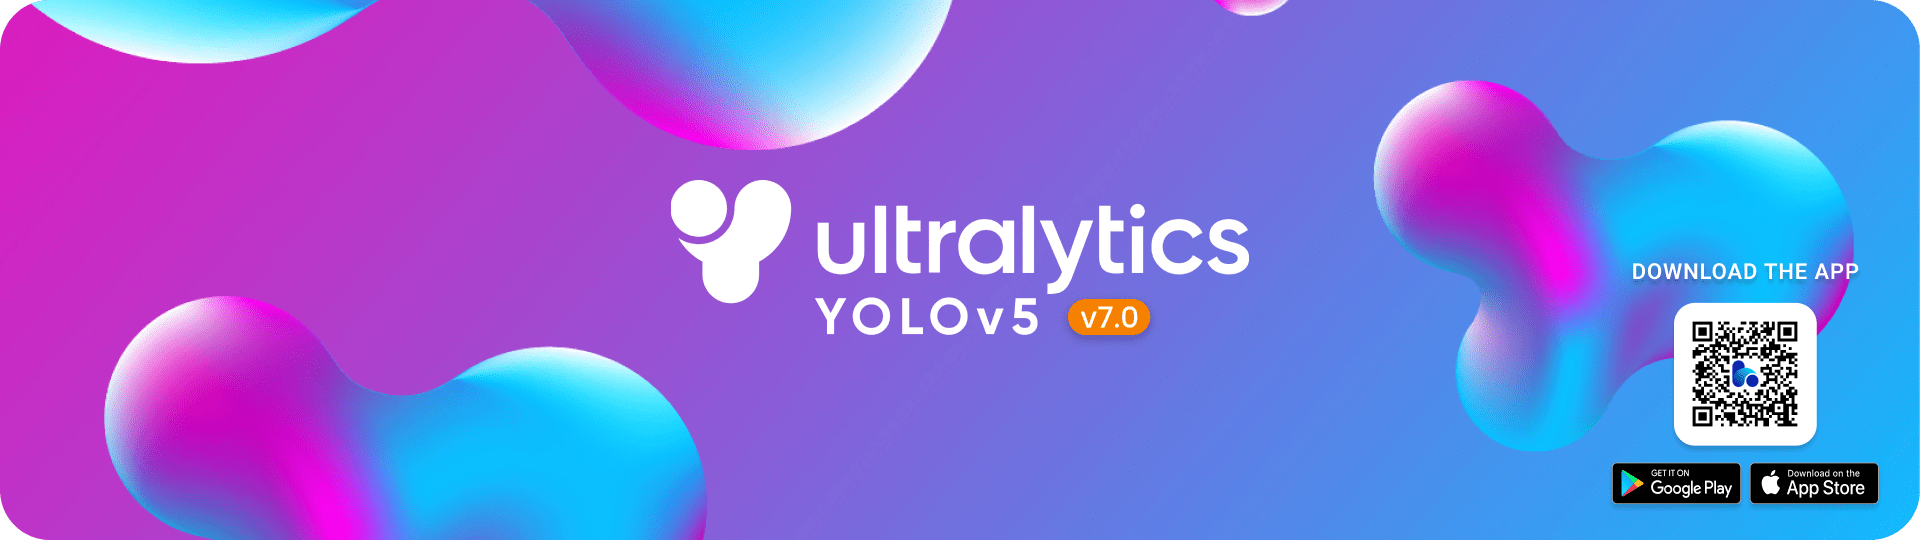 Ultralytics YOLOv5 V7.0バナー